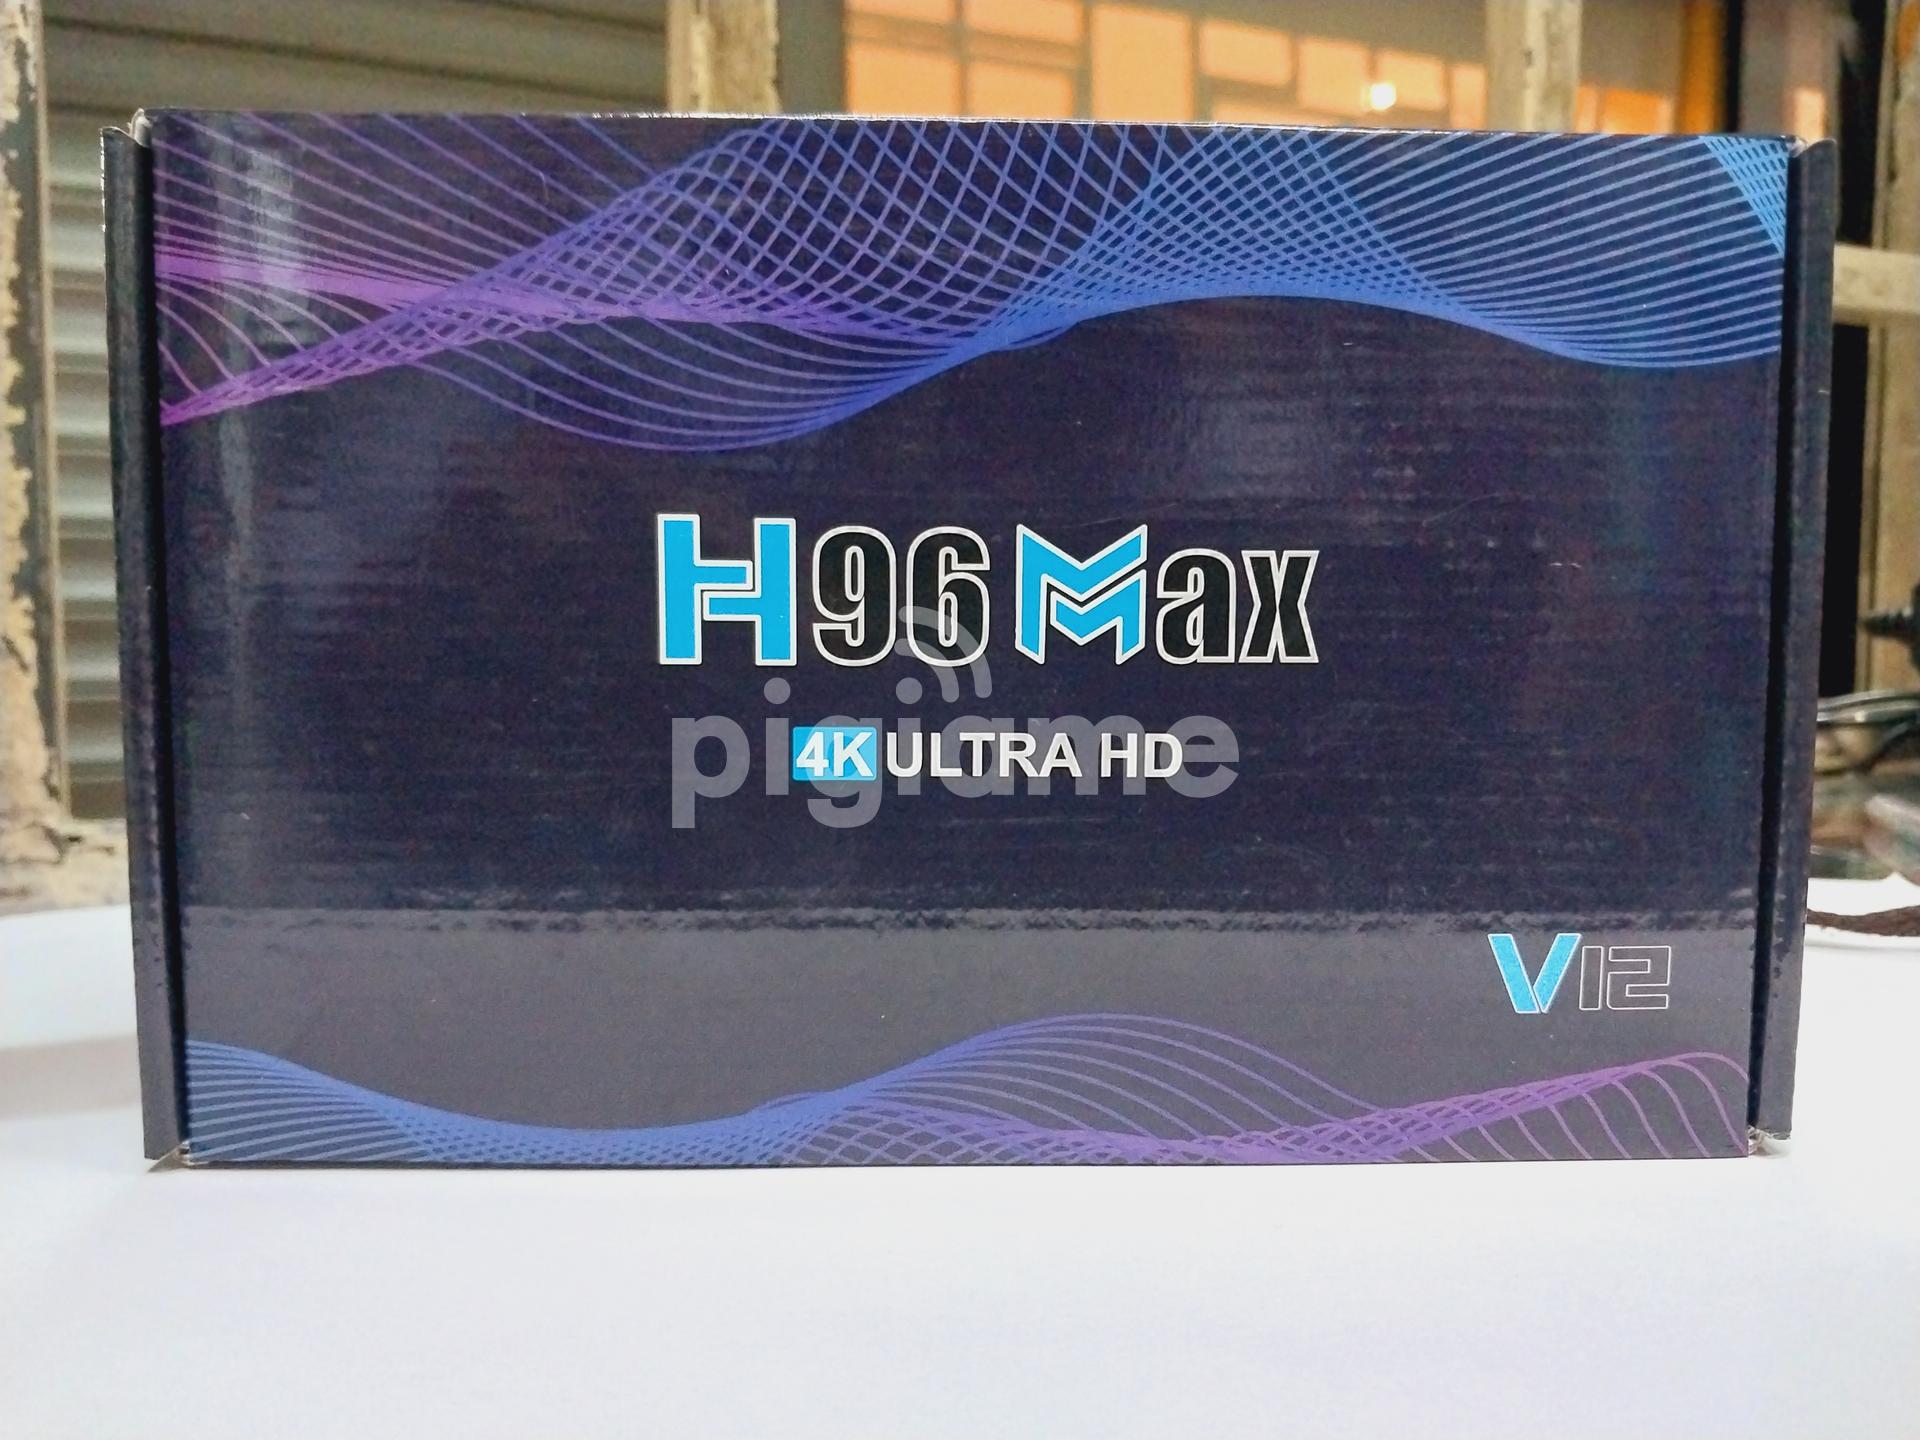 H96 max V12 4K Android TV Box